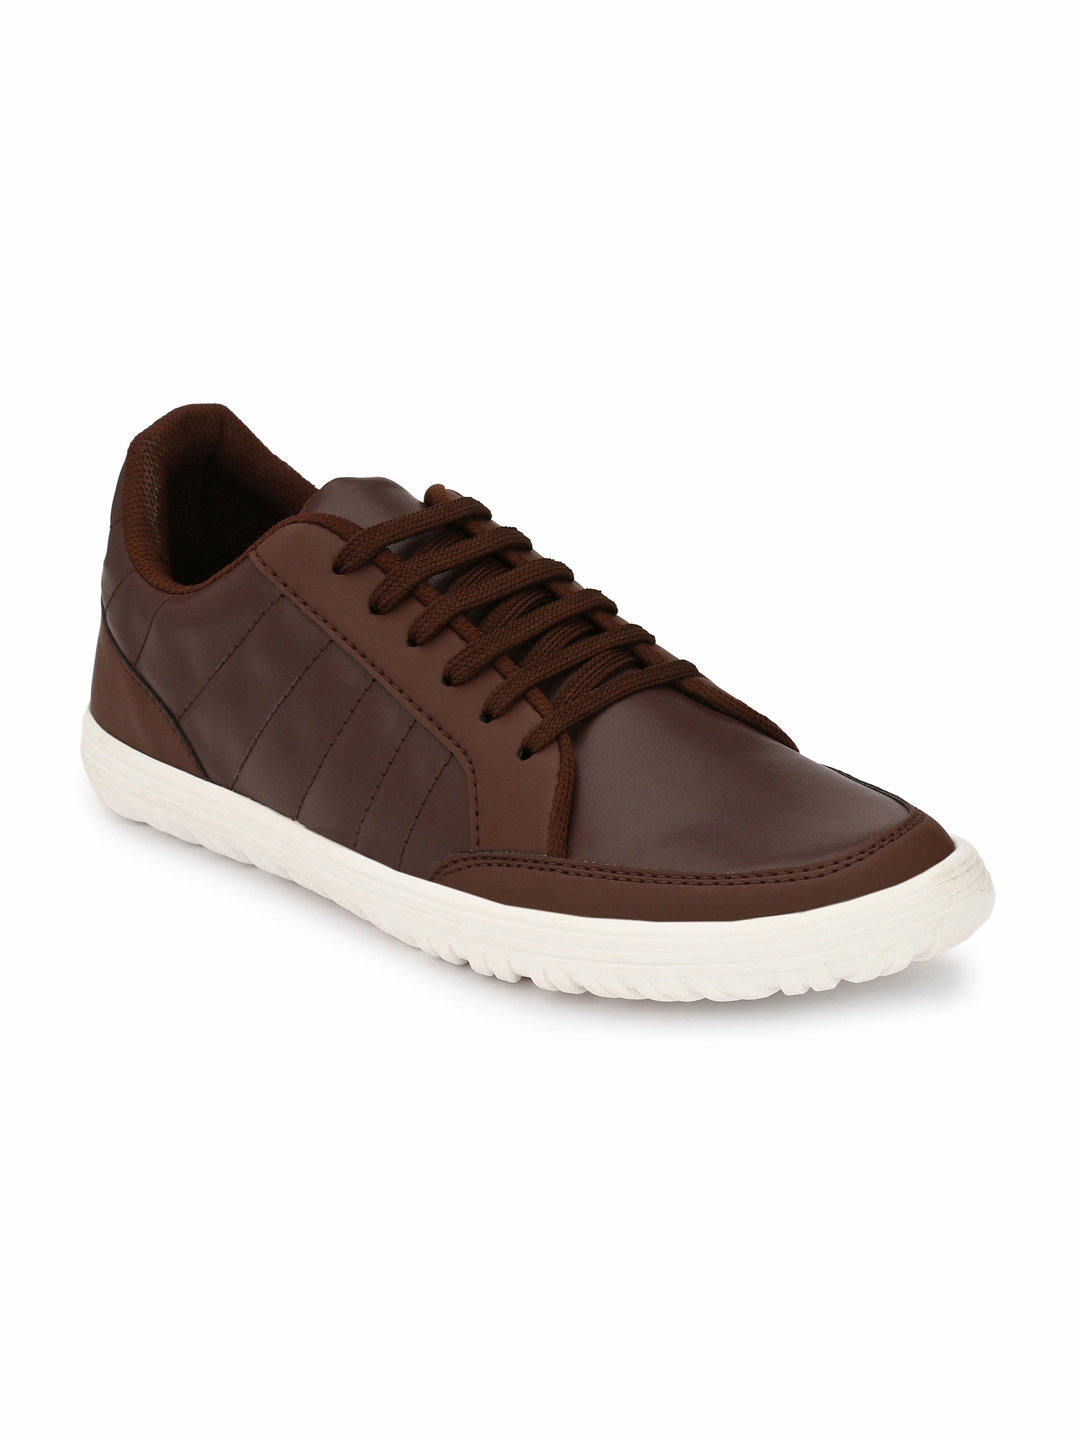 Buy John Karsun Men Brown Sneakers - Casual Shoes for Men 1972602 | Myntra